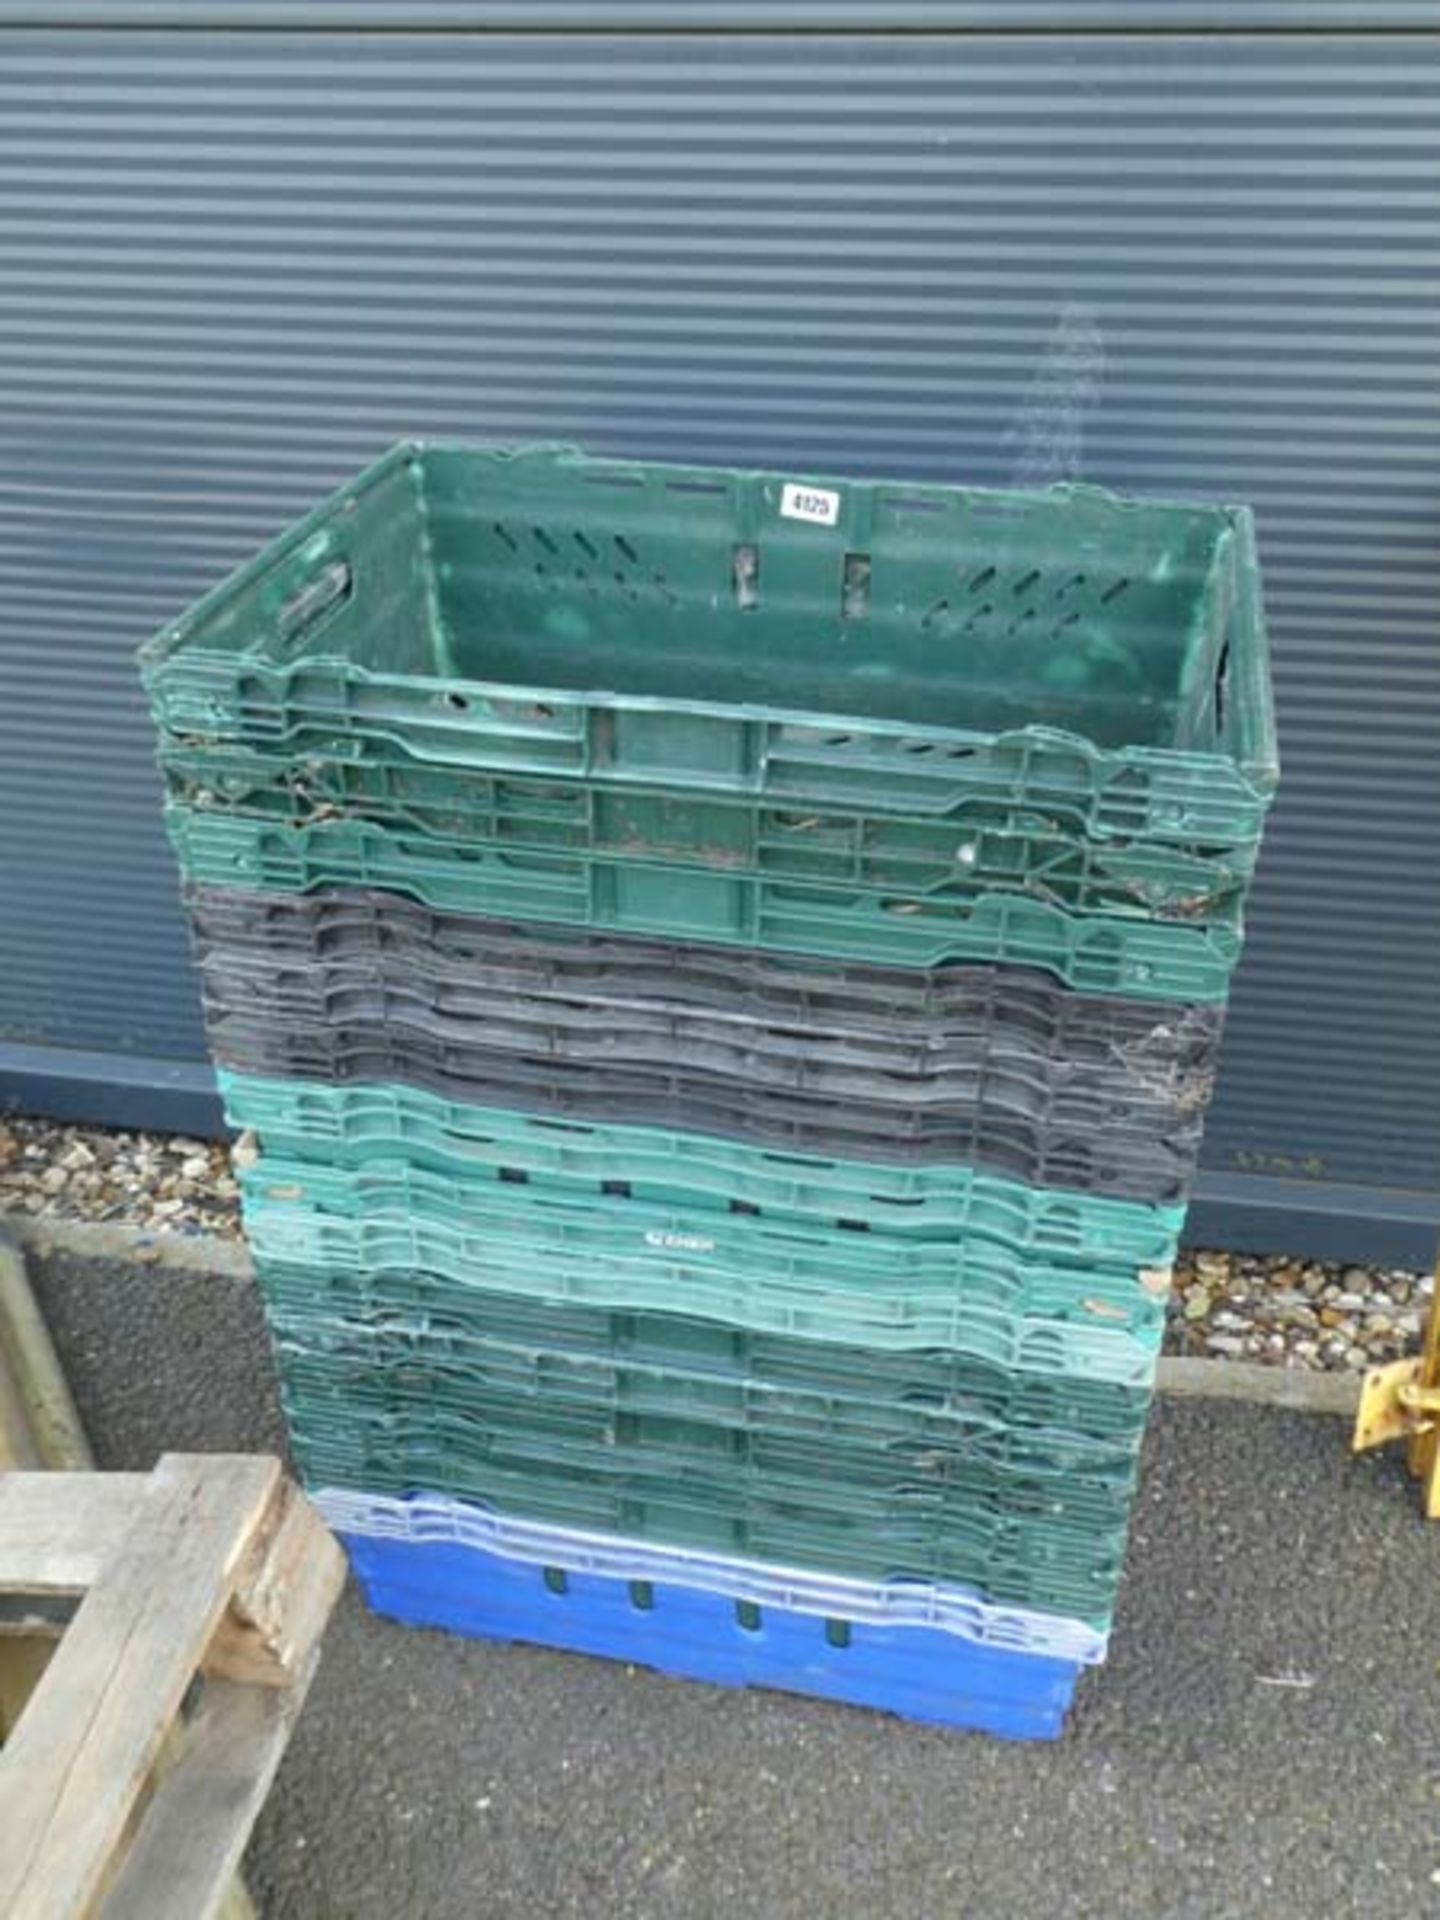 Quantity of plastic stacking crates